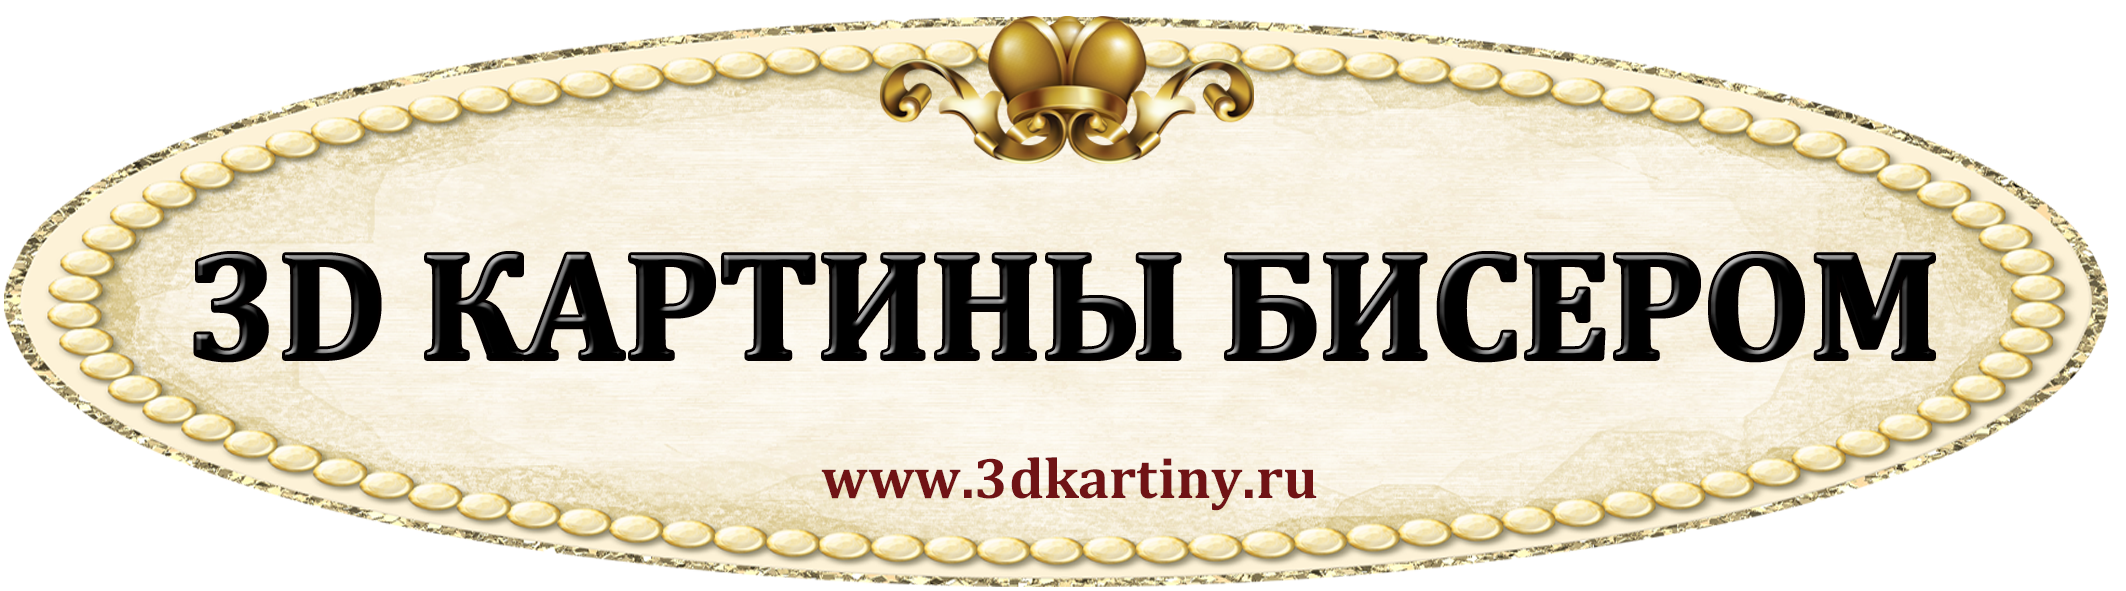 Логотип_с_обложки.png